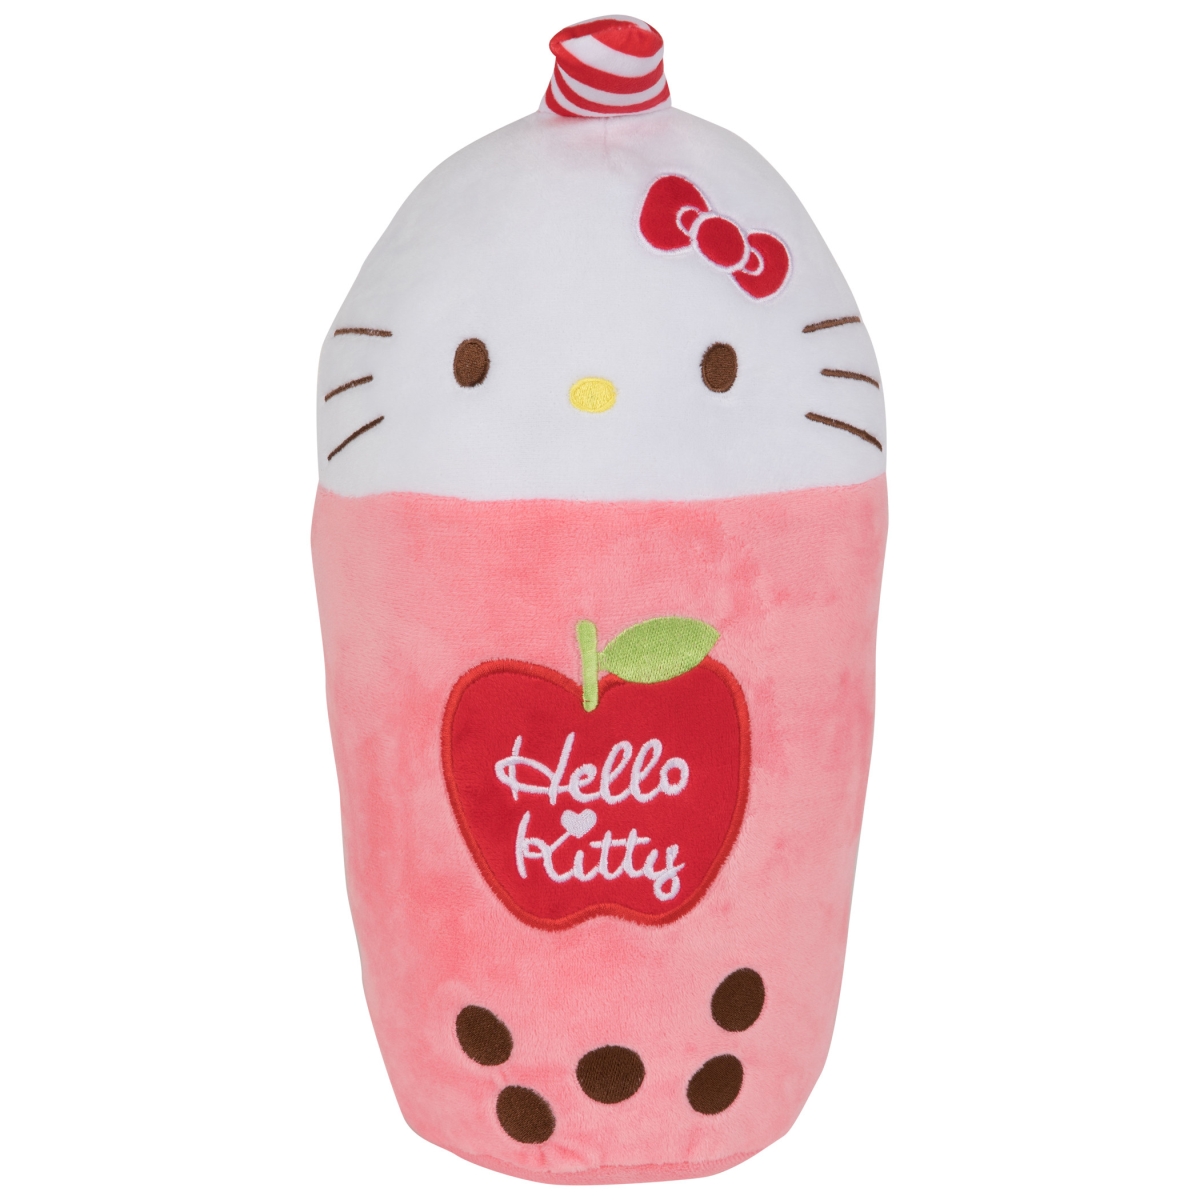 Hello Kitty 871006 15 in. Hello Kitty Boba Plush Toy